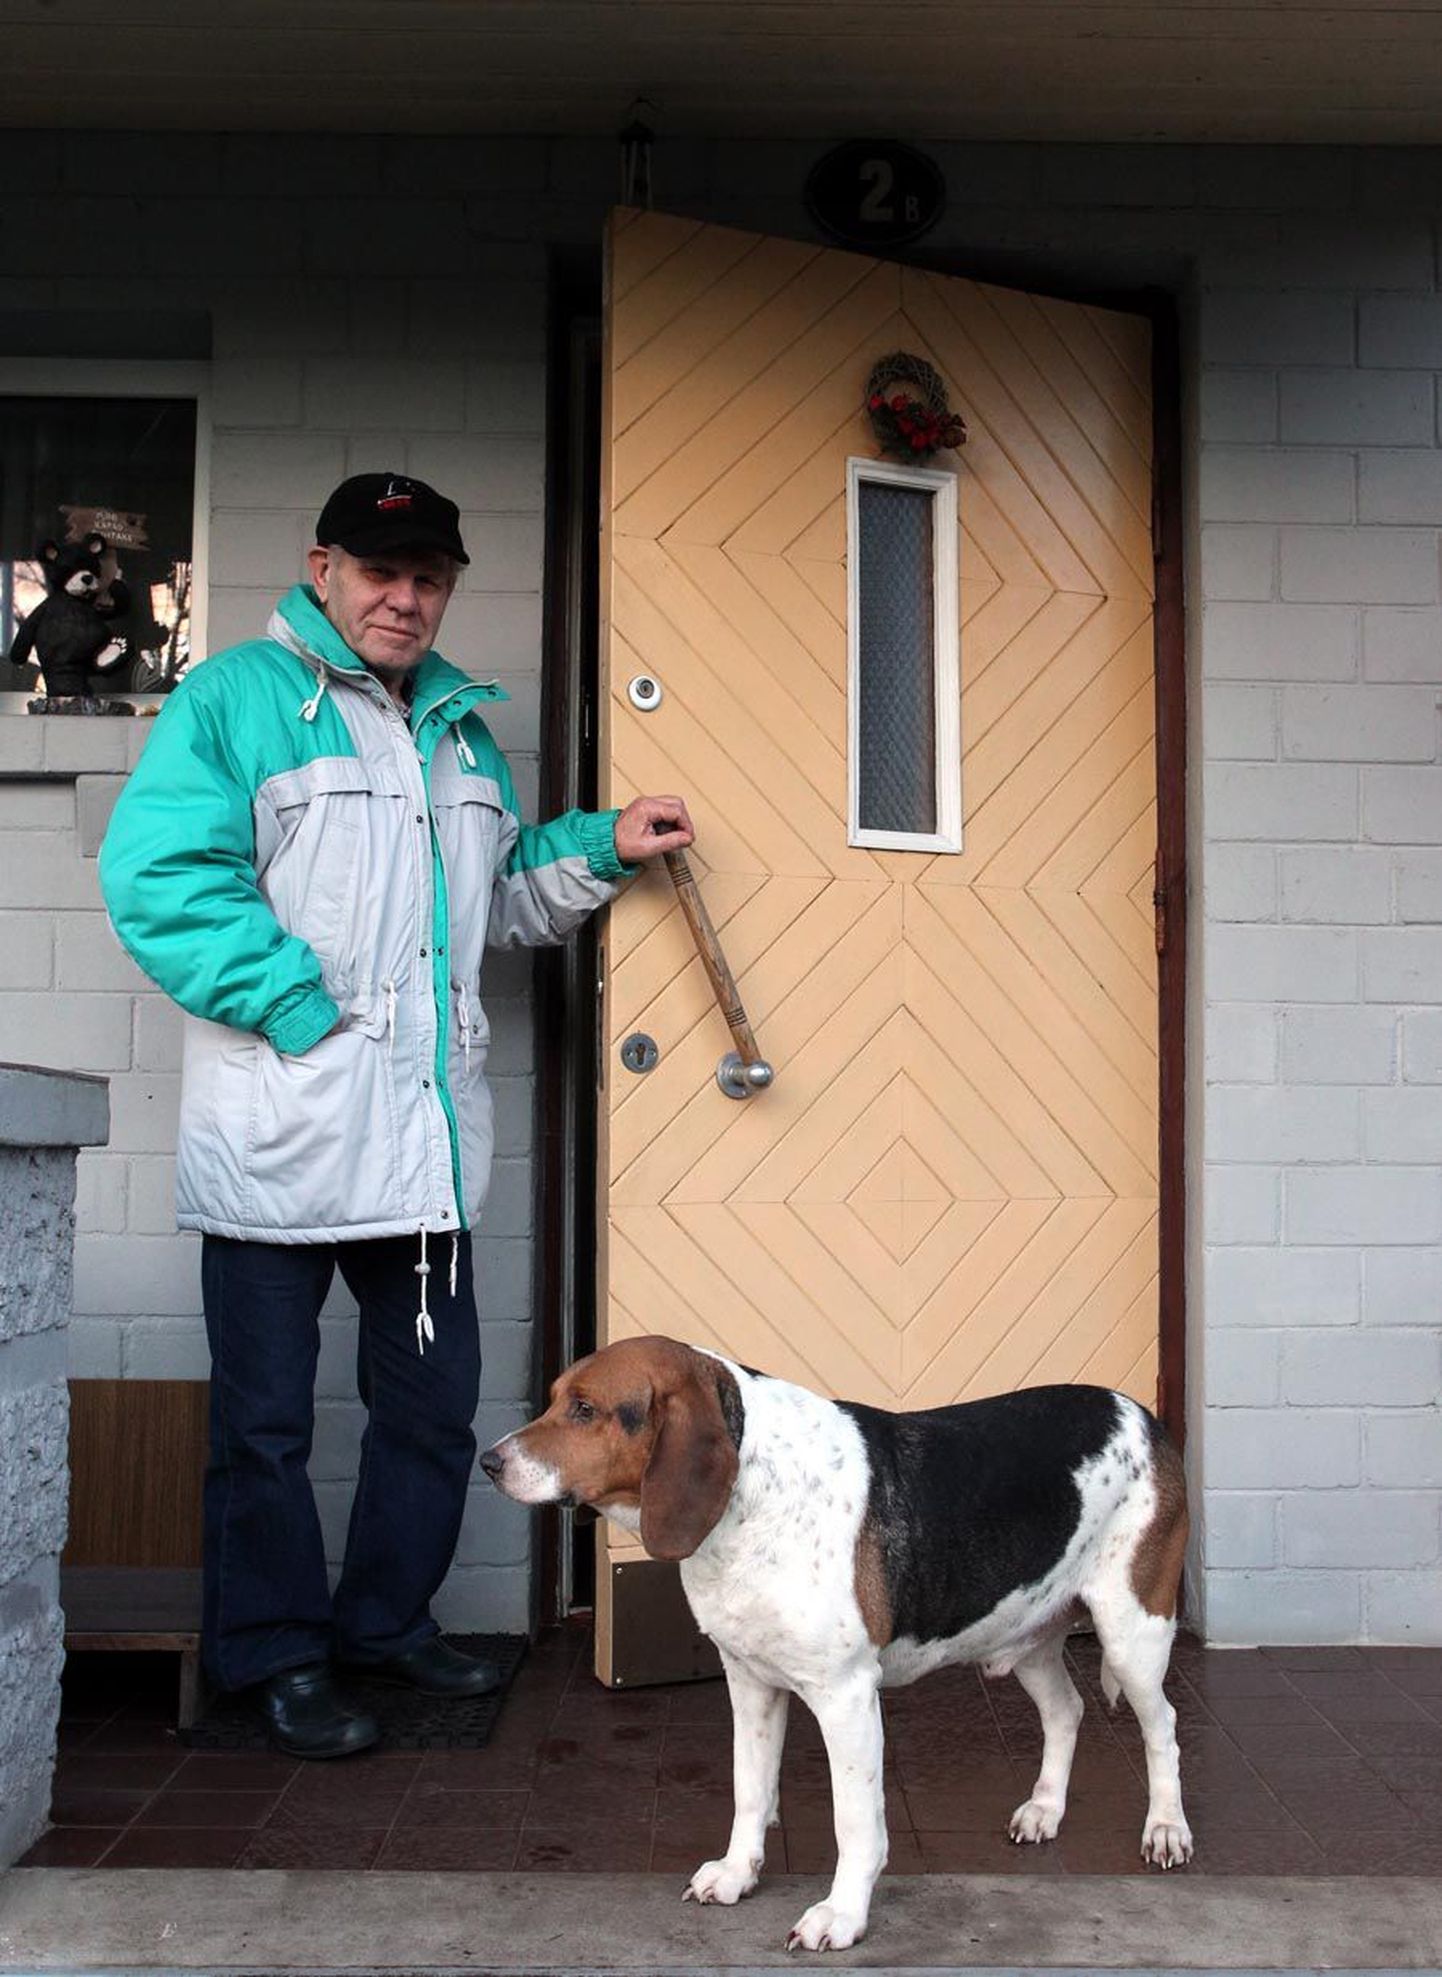 82-aastane Paul Martin kulutas eelmisel aastal oma Tallinnas asuva eramaja soojustamisele ligi 3000 eurot, Kredexi toetusele ta loota ei saanud.